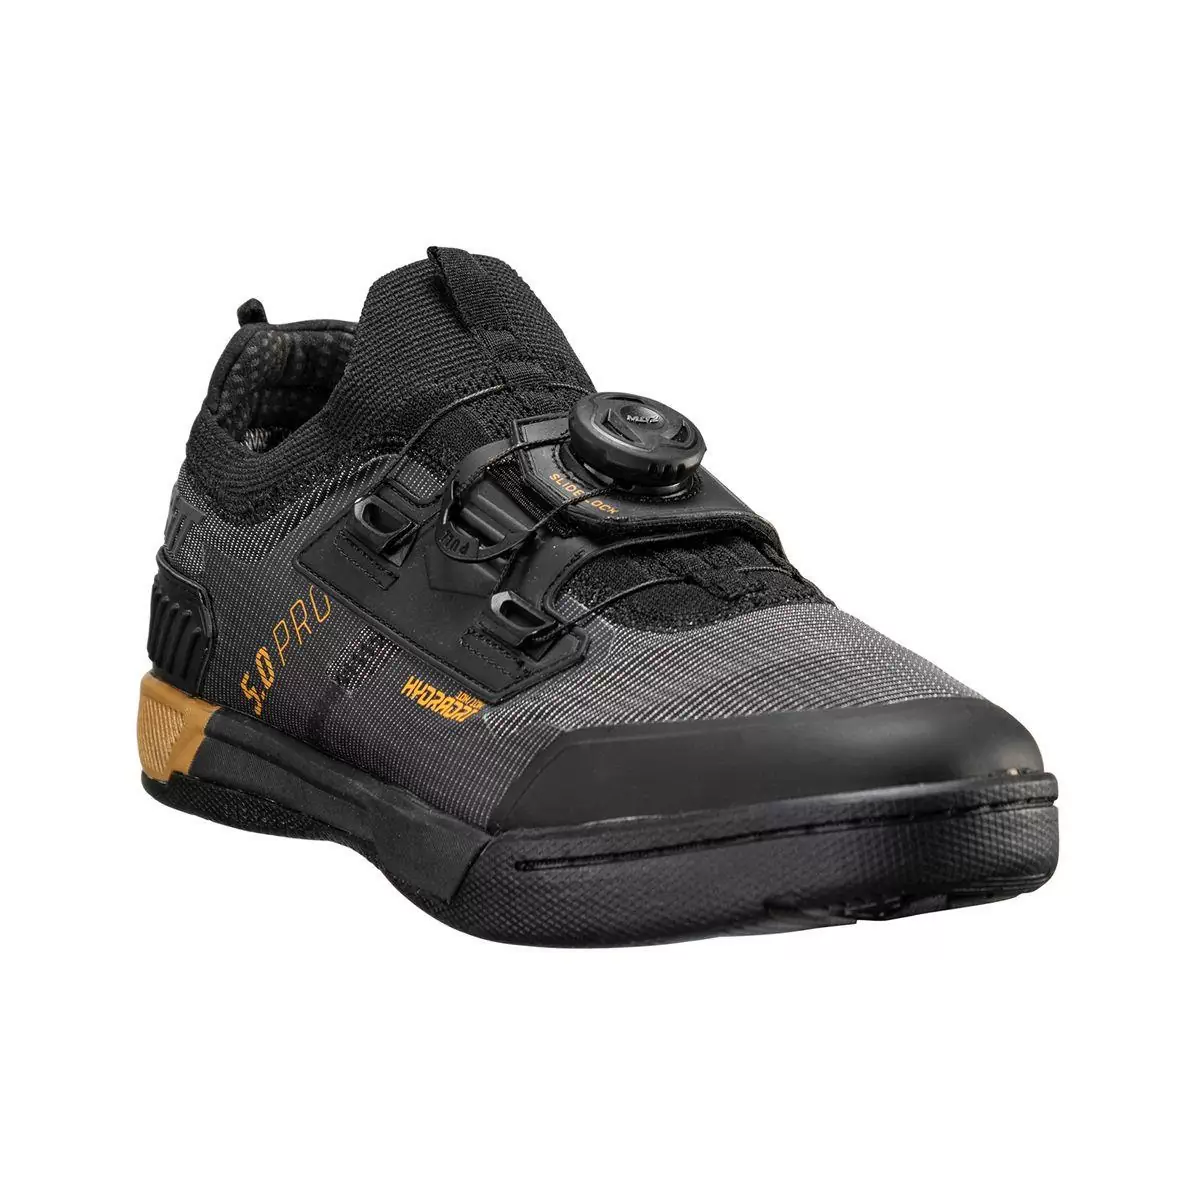 Chaussures VTT imperméables HydraDri ProClip 5.0 noir taille 44.5 - image